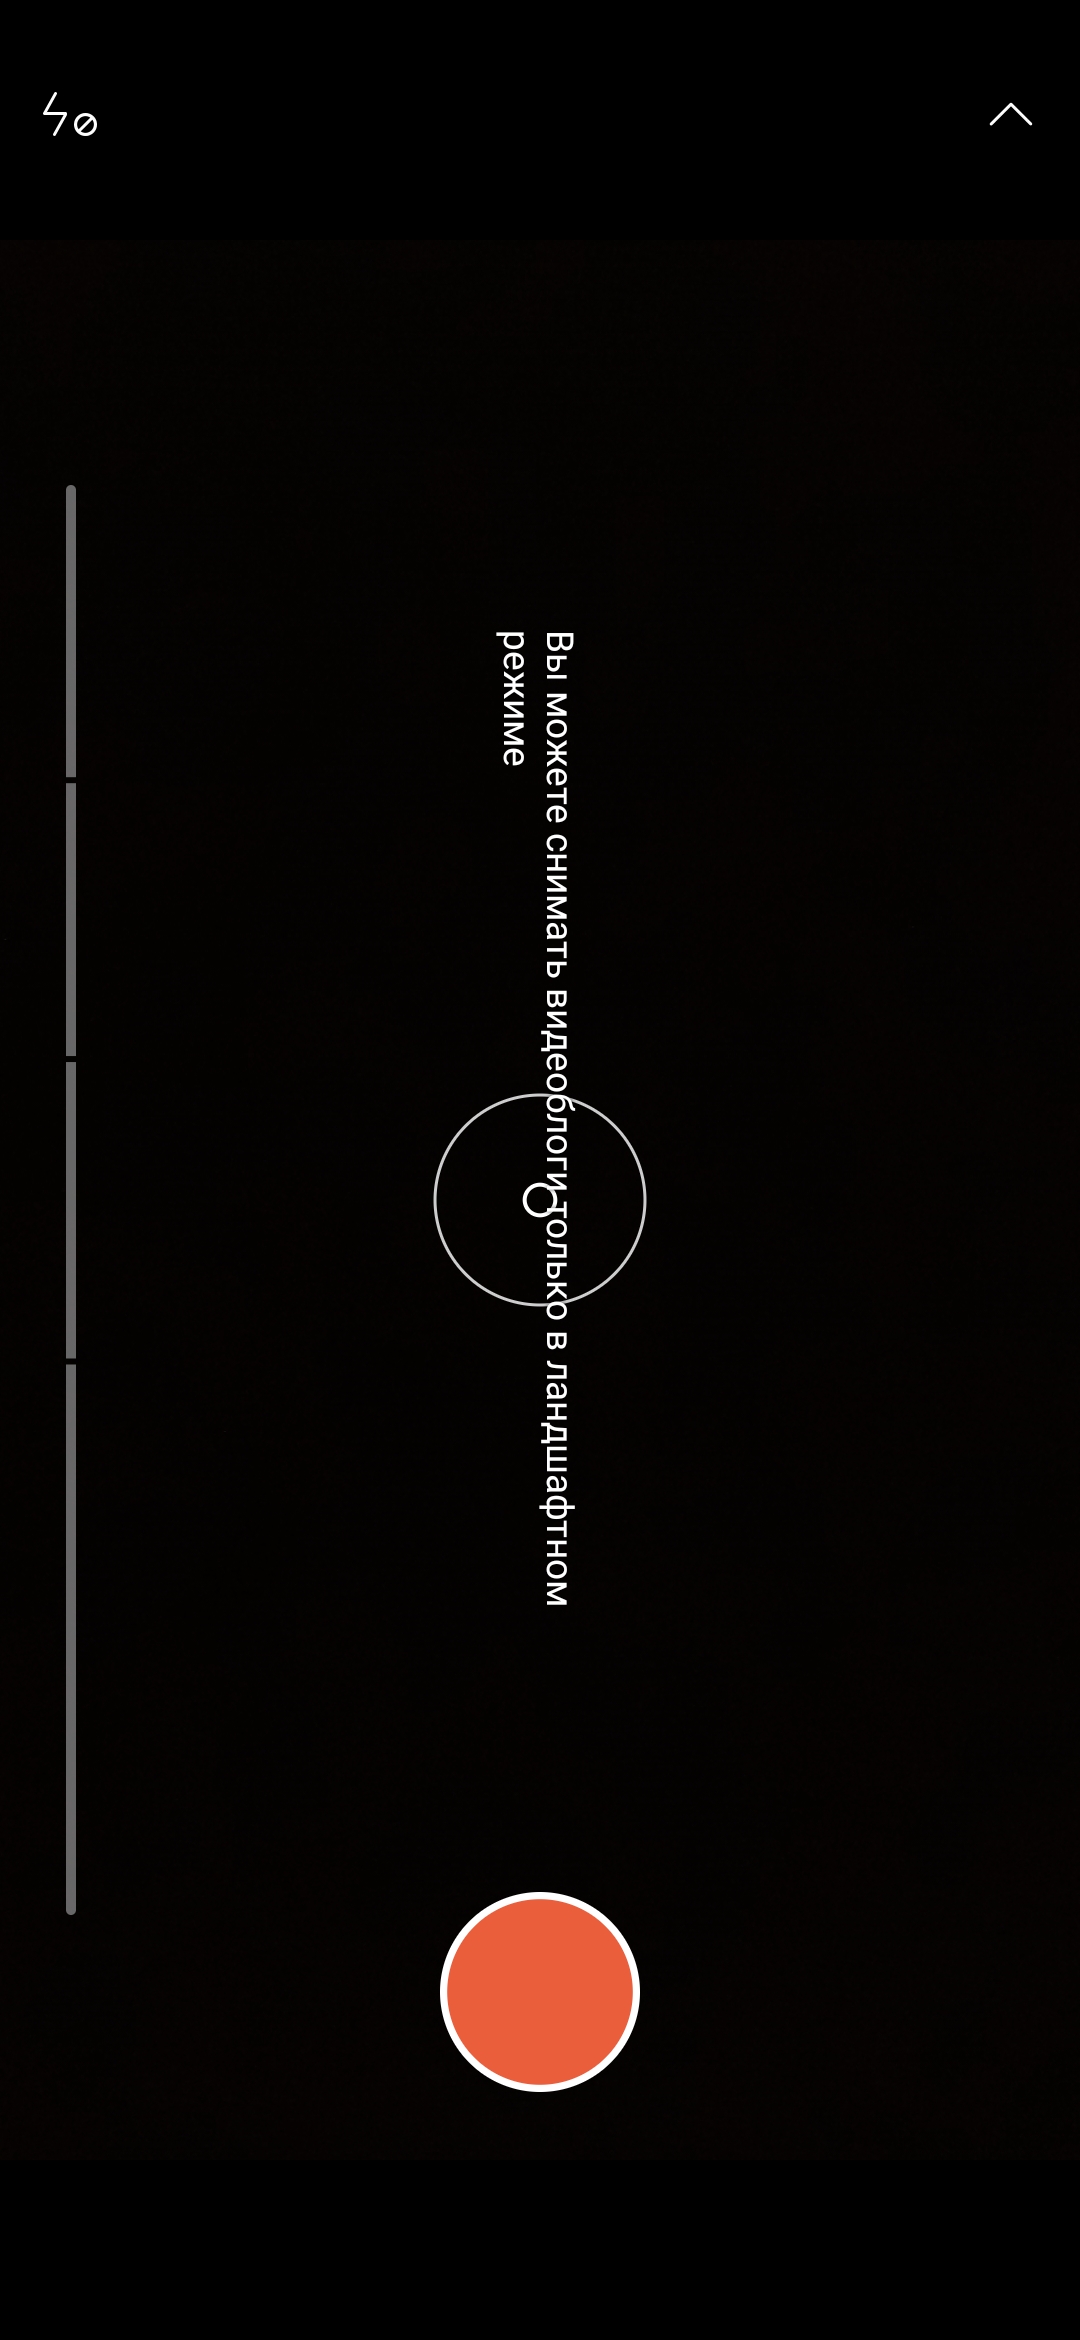 Recenzja Xiaomi Mi Note 10: pierwszy na świecie smartfon z pentakamerą o rozdzielczości 108 megapikseli-268